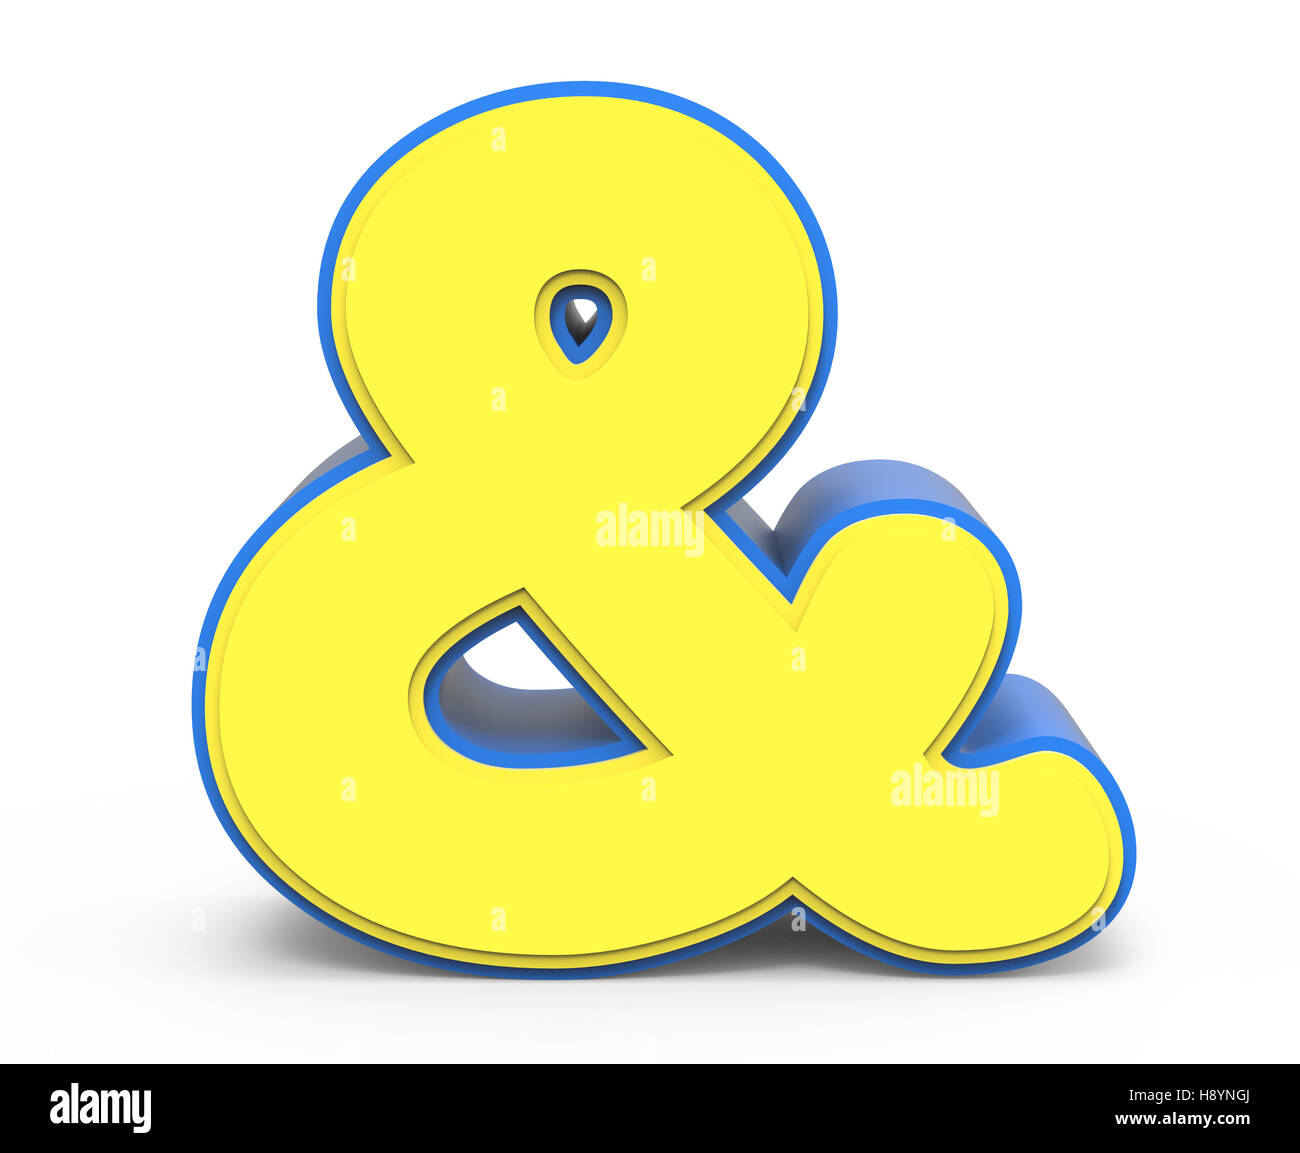 Jaune mignon et signe, signe jaune avec cadre bleu, toylike signe pour concevoir, rendu 3D Banque D'Images